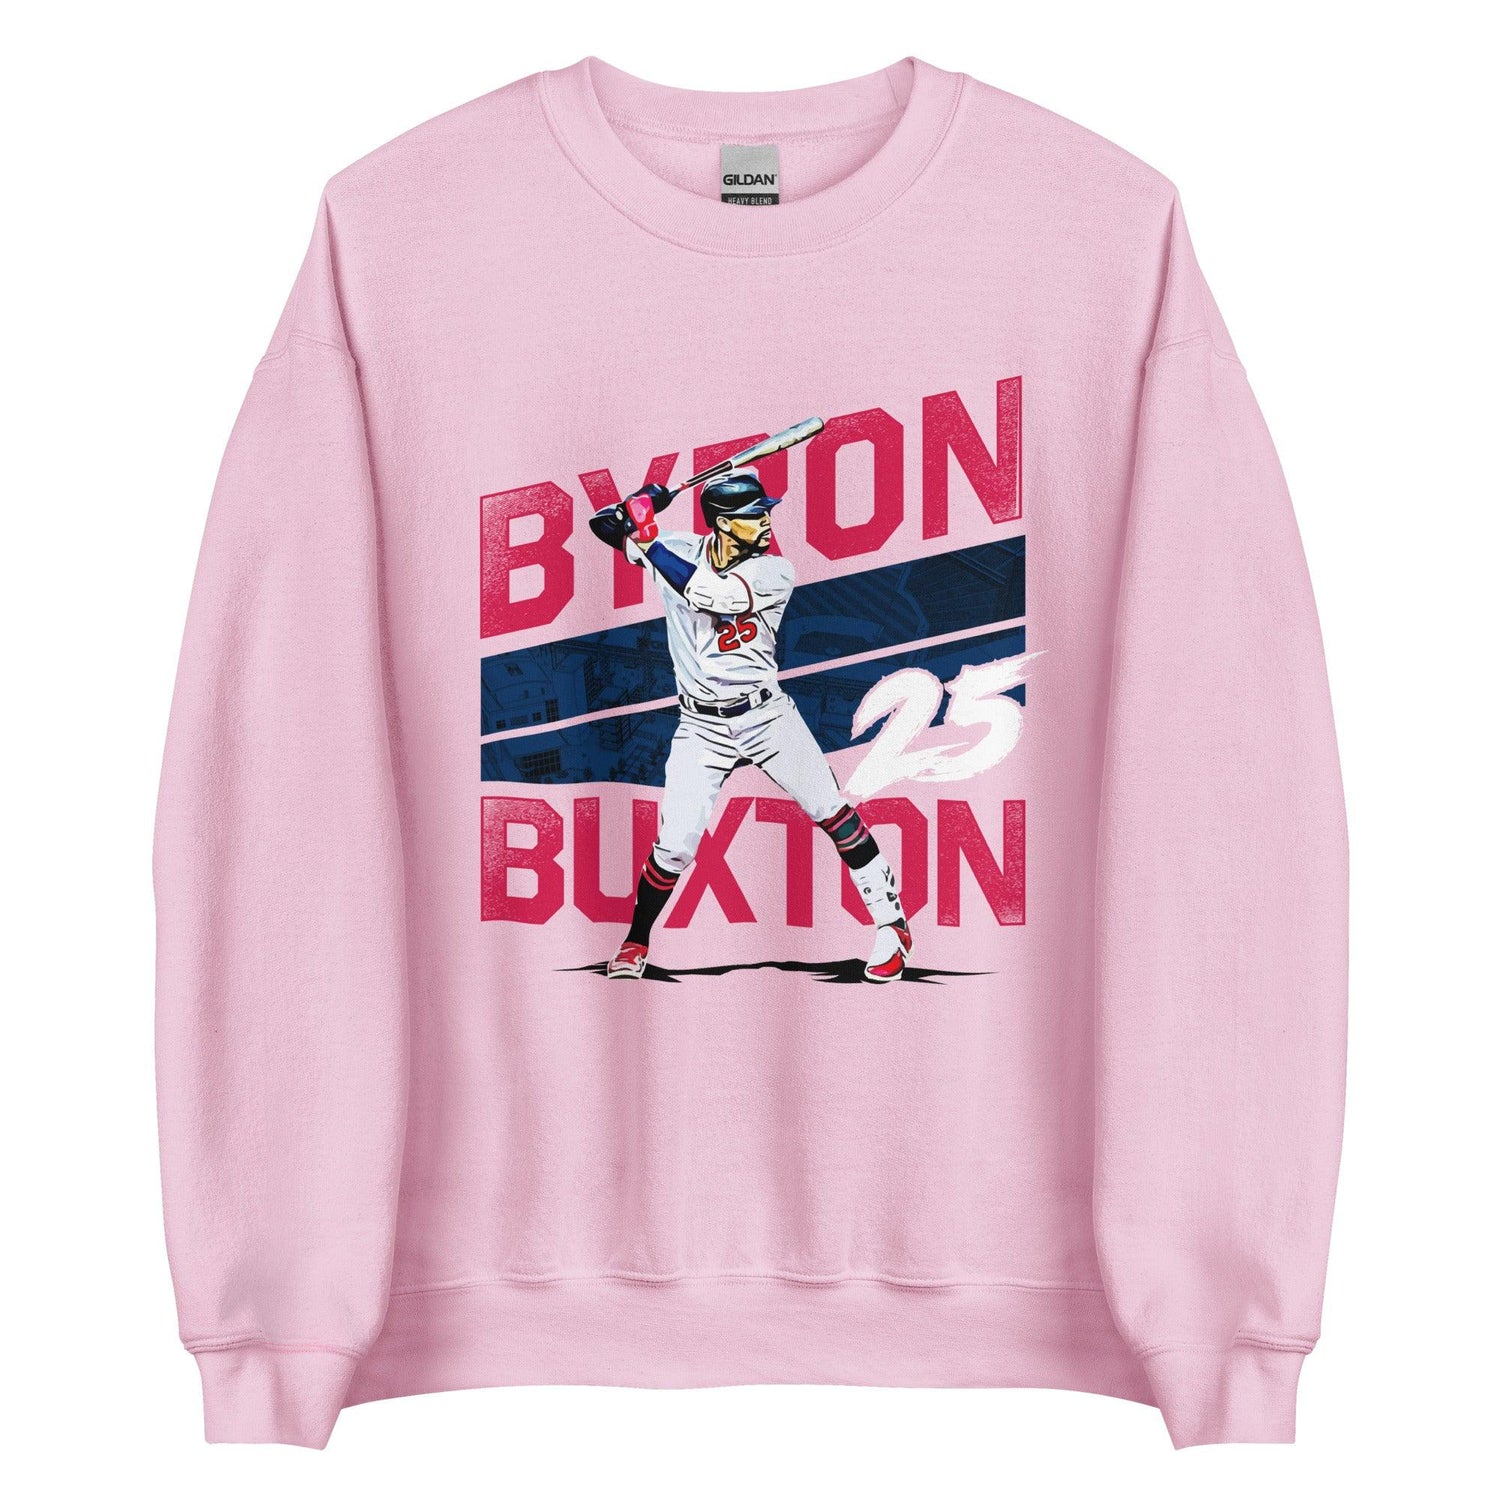 Byron Buxton "25" Sweatshirt - Fan Arch